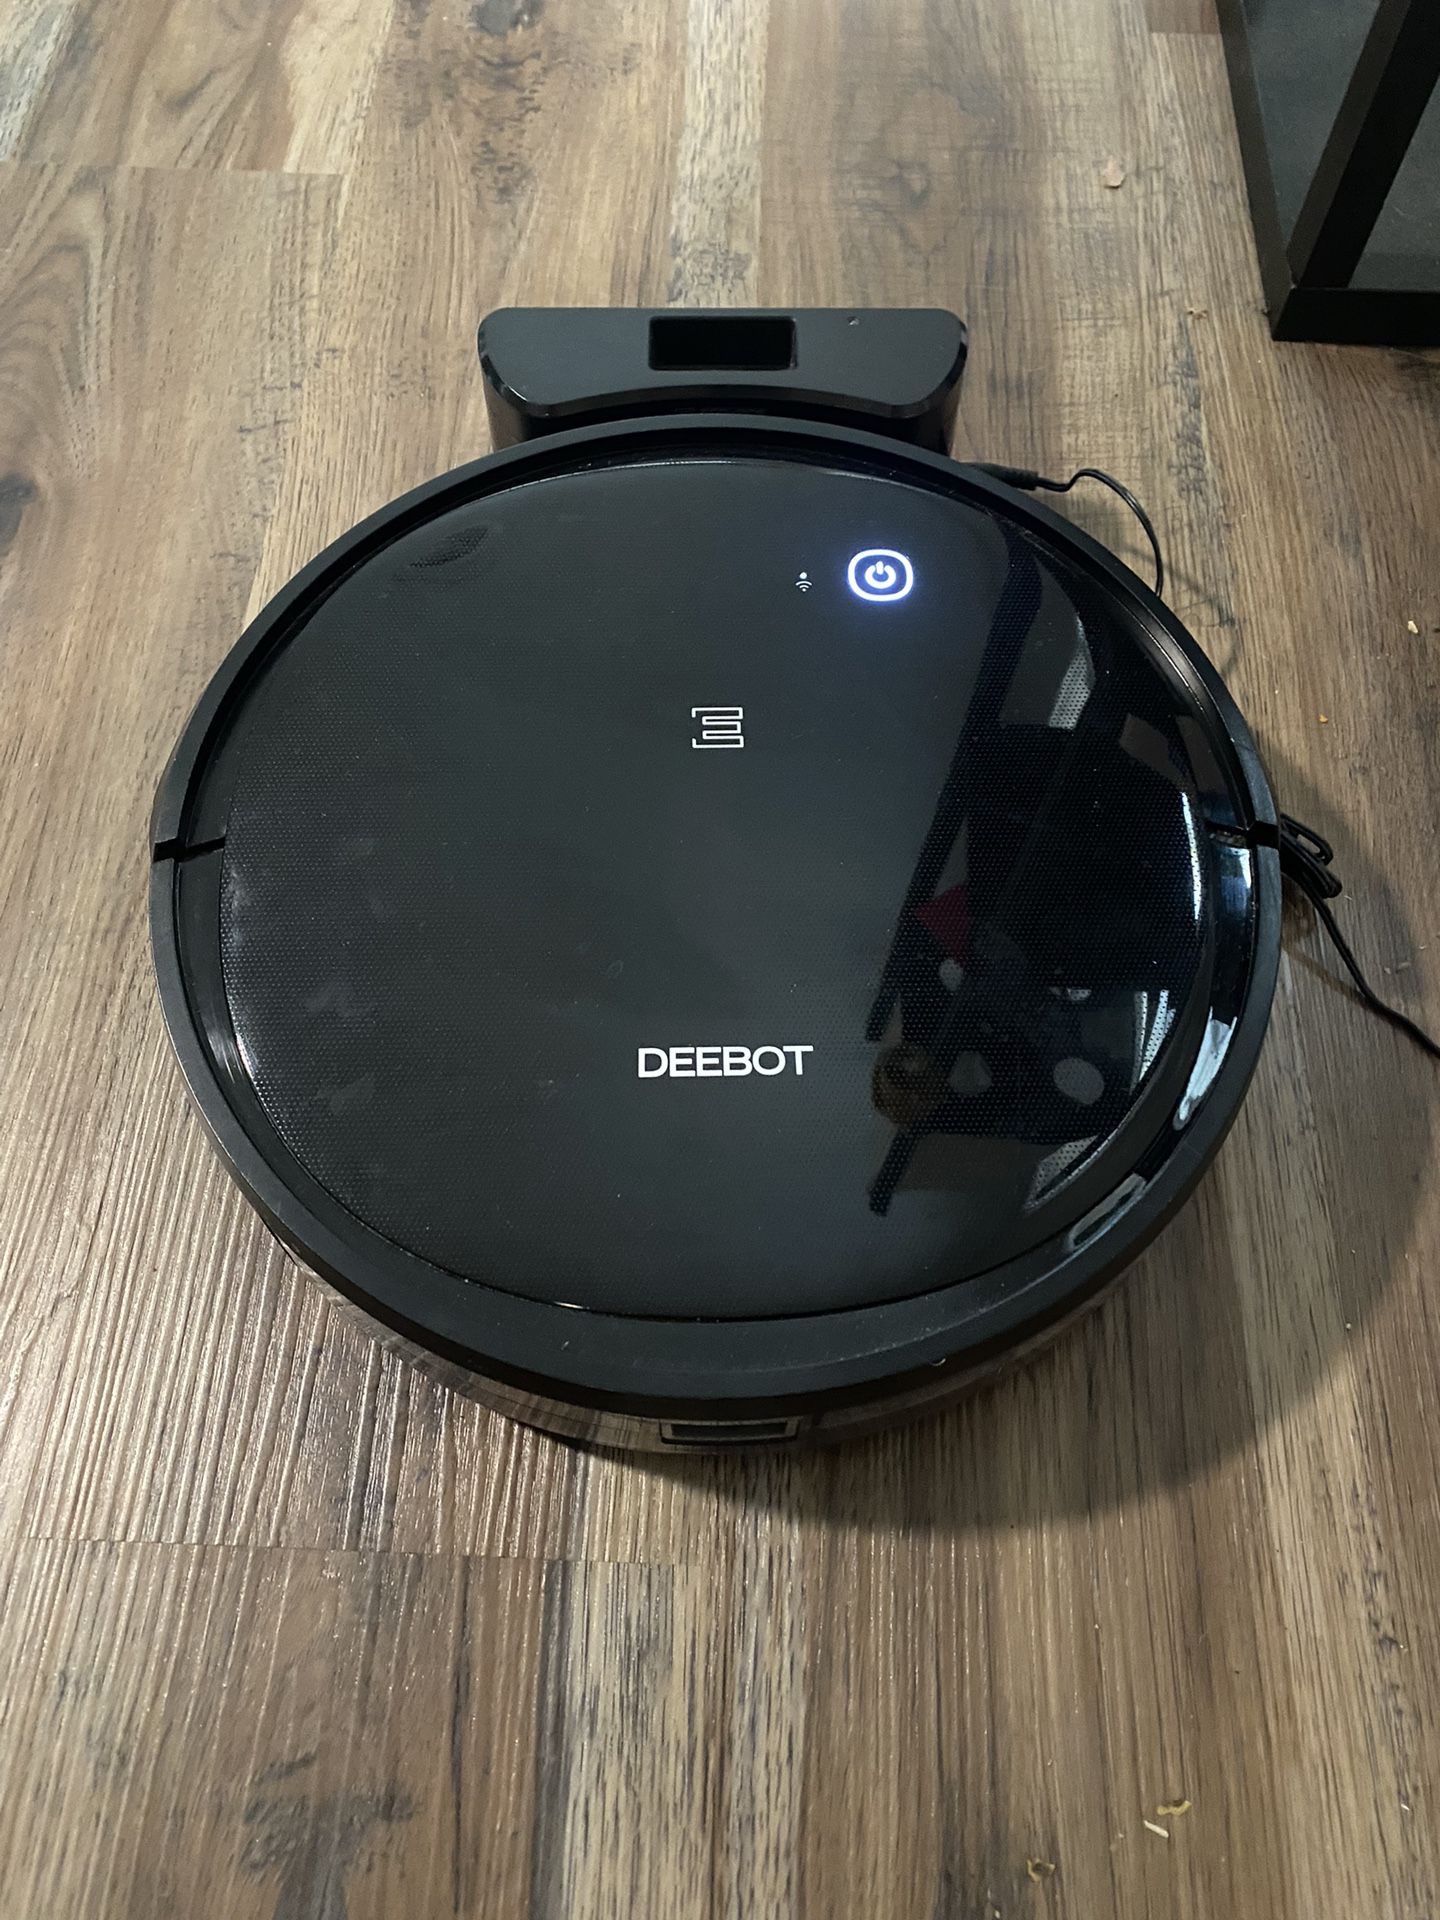 Deebot Vacuum Cleaner